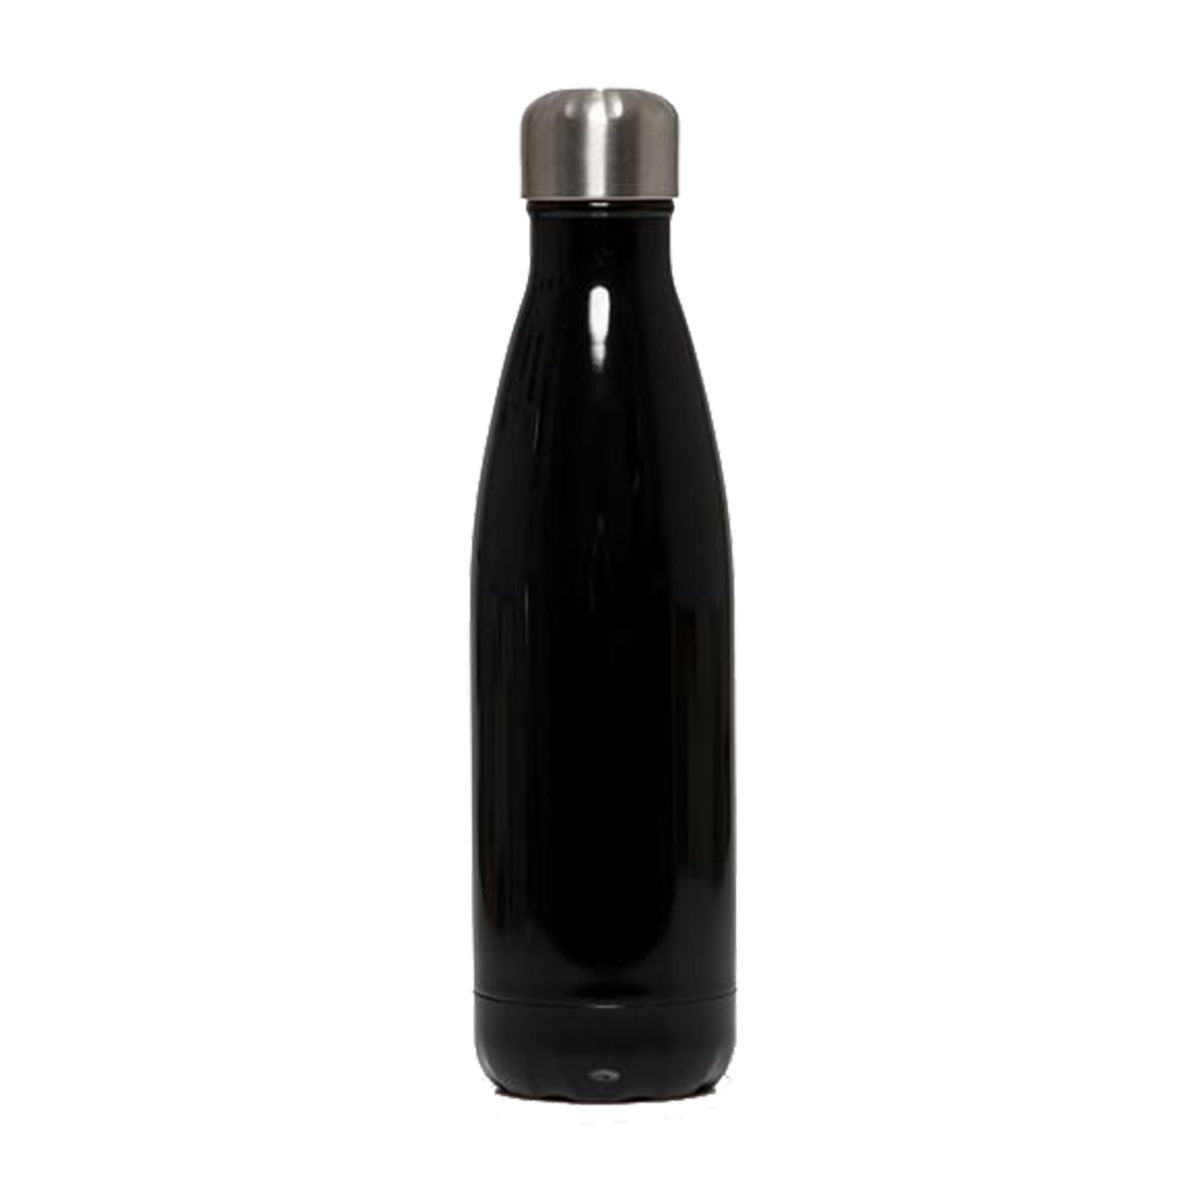 Θερμός-Μπουκάλι Ανοξείδωτο Μαύρο Gloss Estia 500ml 01-10829 (Υλικό: Ανοξείδωτο, Χρώμα: Μαύρο) – estia – 01-10829